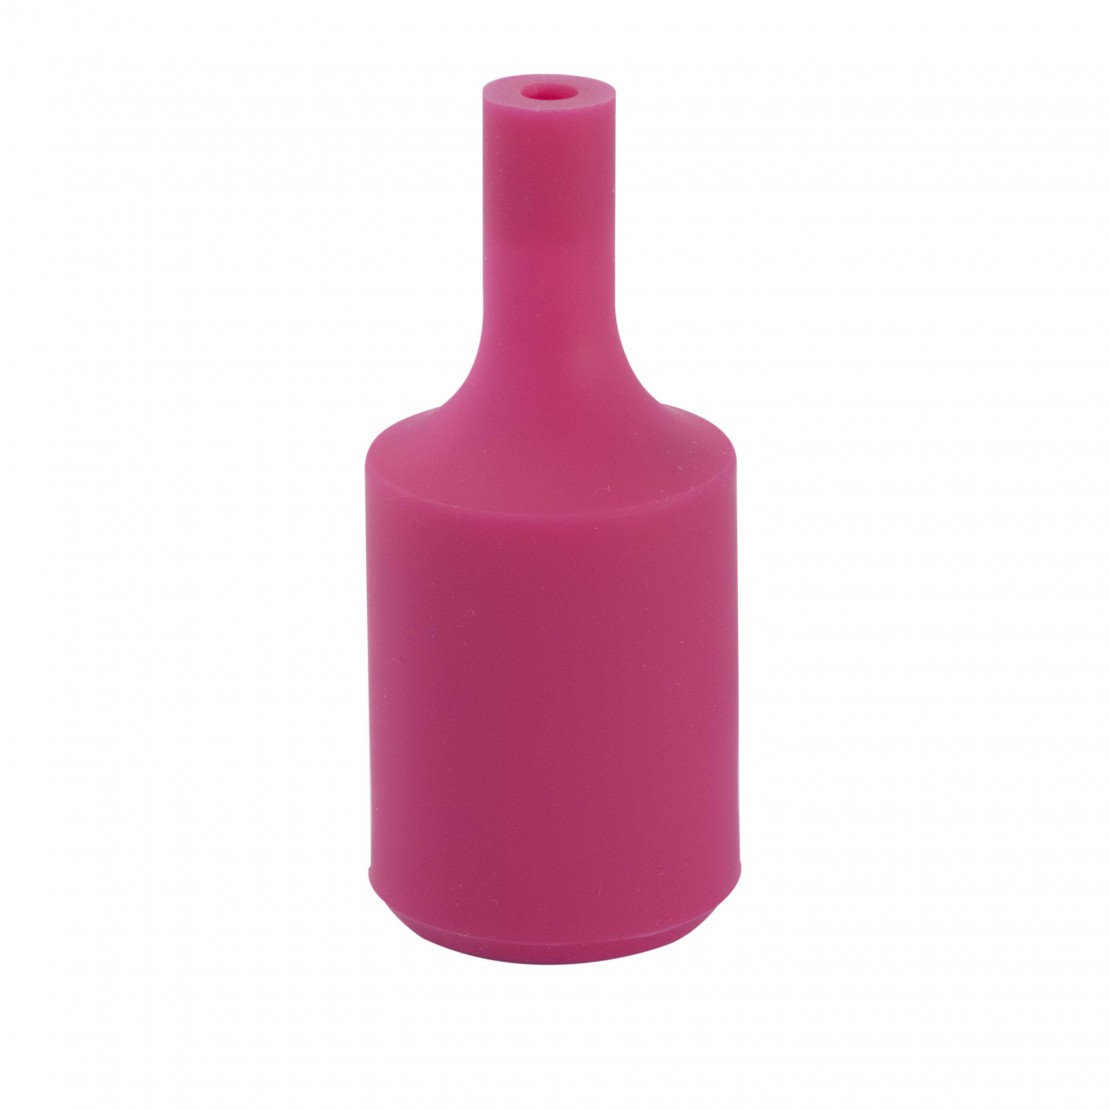 Siliconen lamphouder- roze